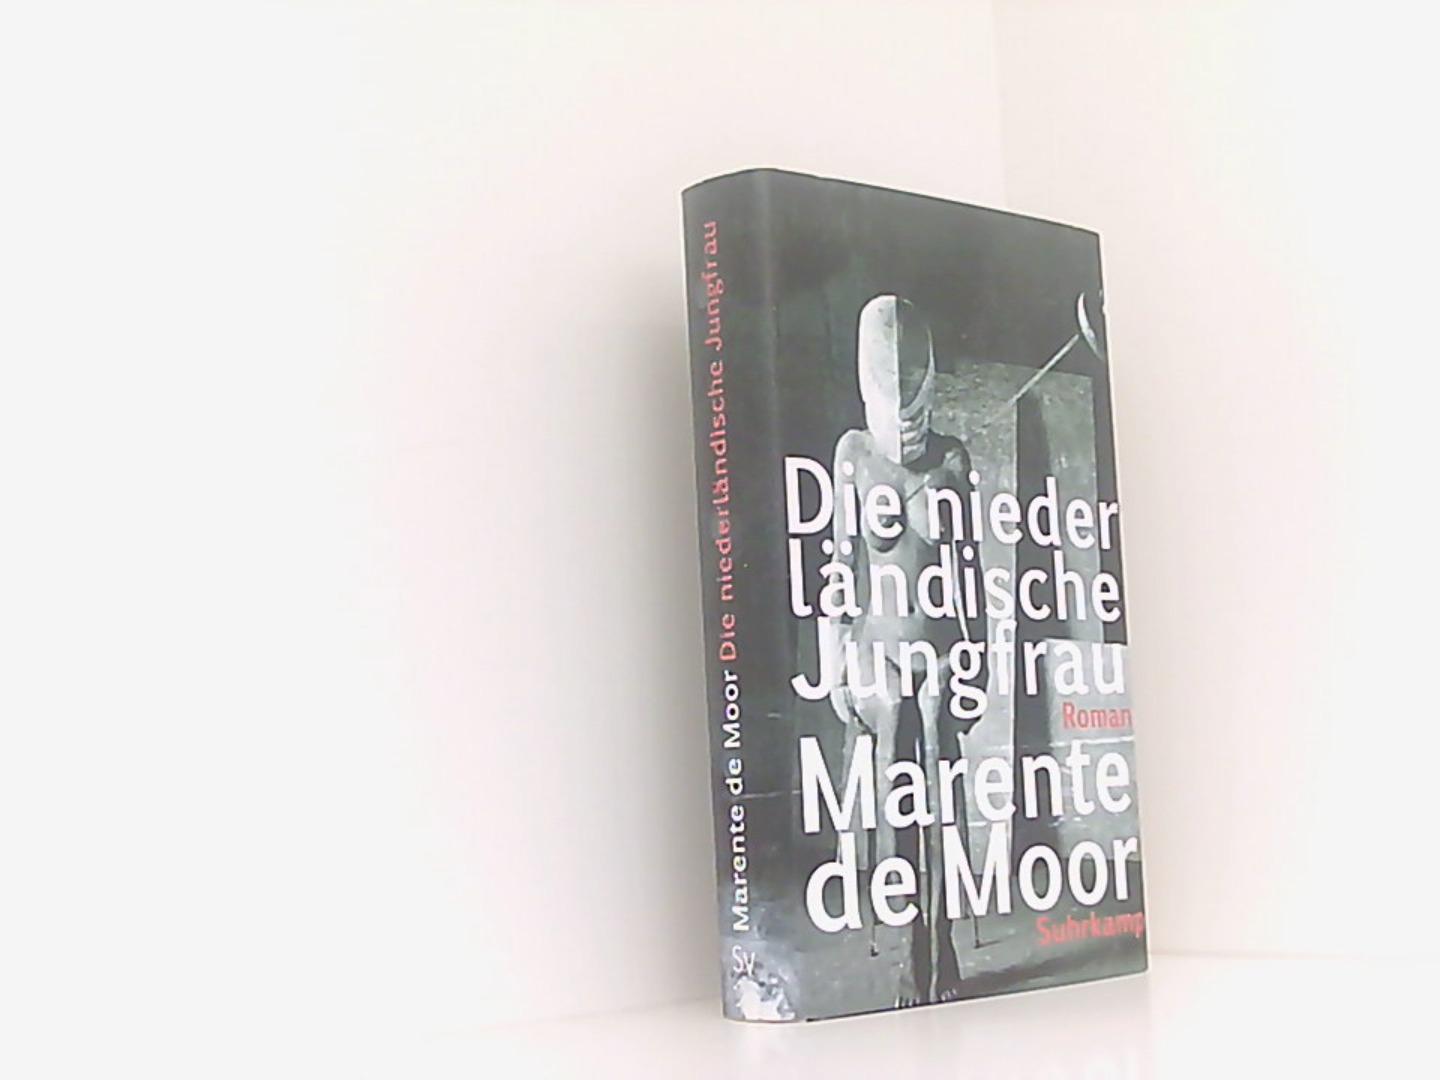 Die niederländische Jungfrau: Roman - Moor Marente, de und van Beuningen Helga